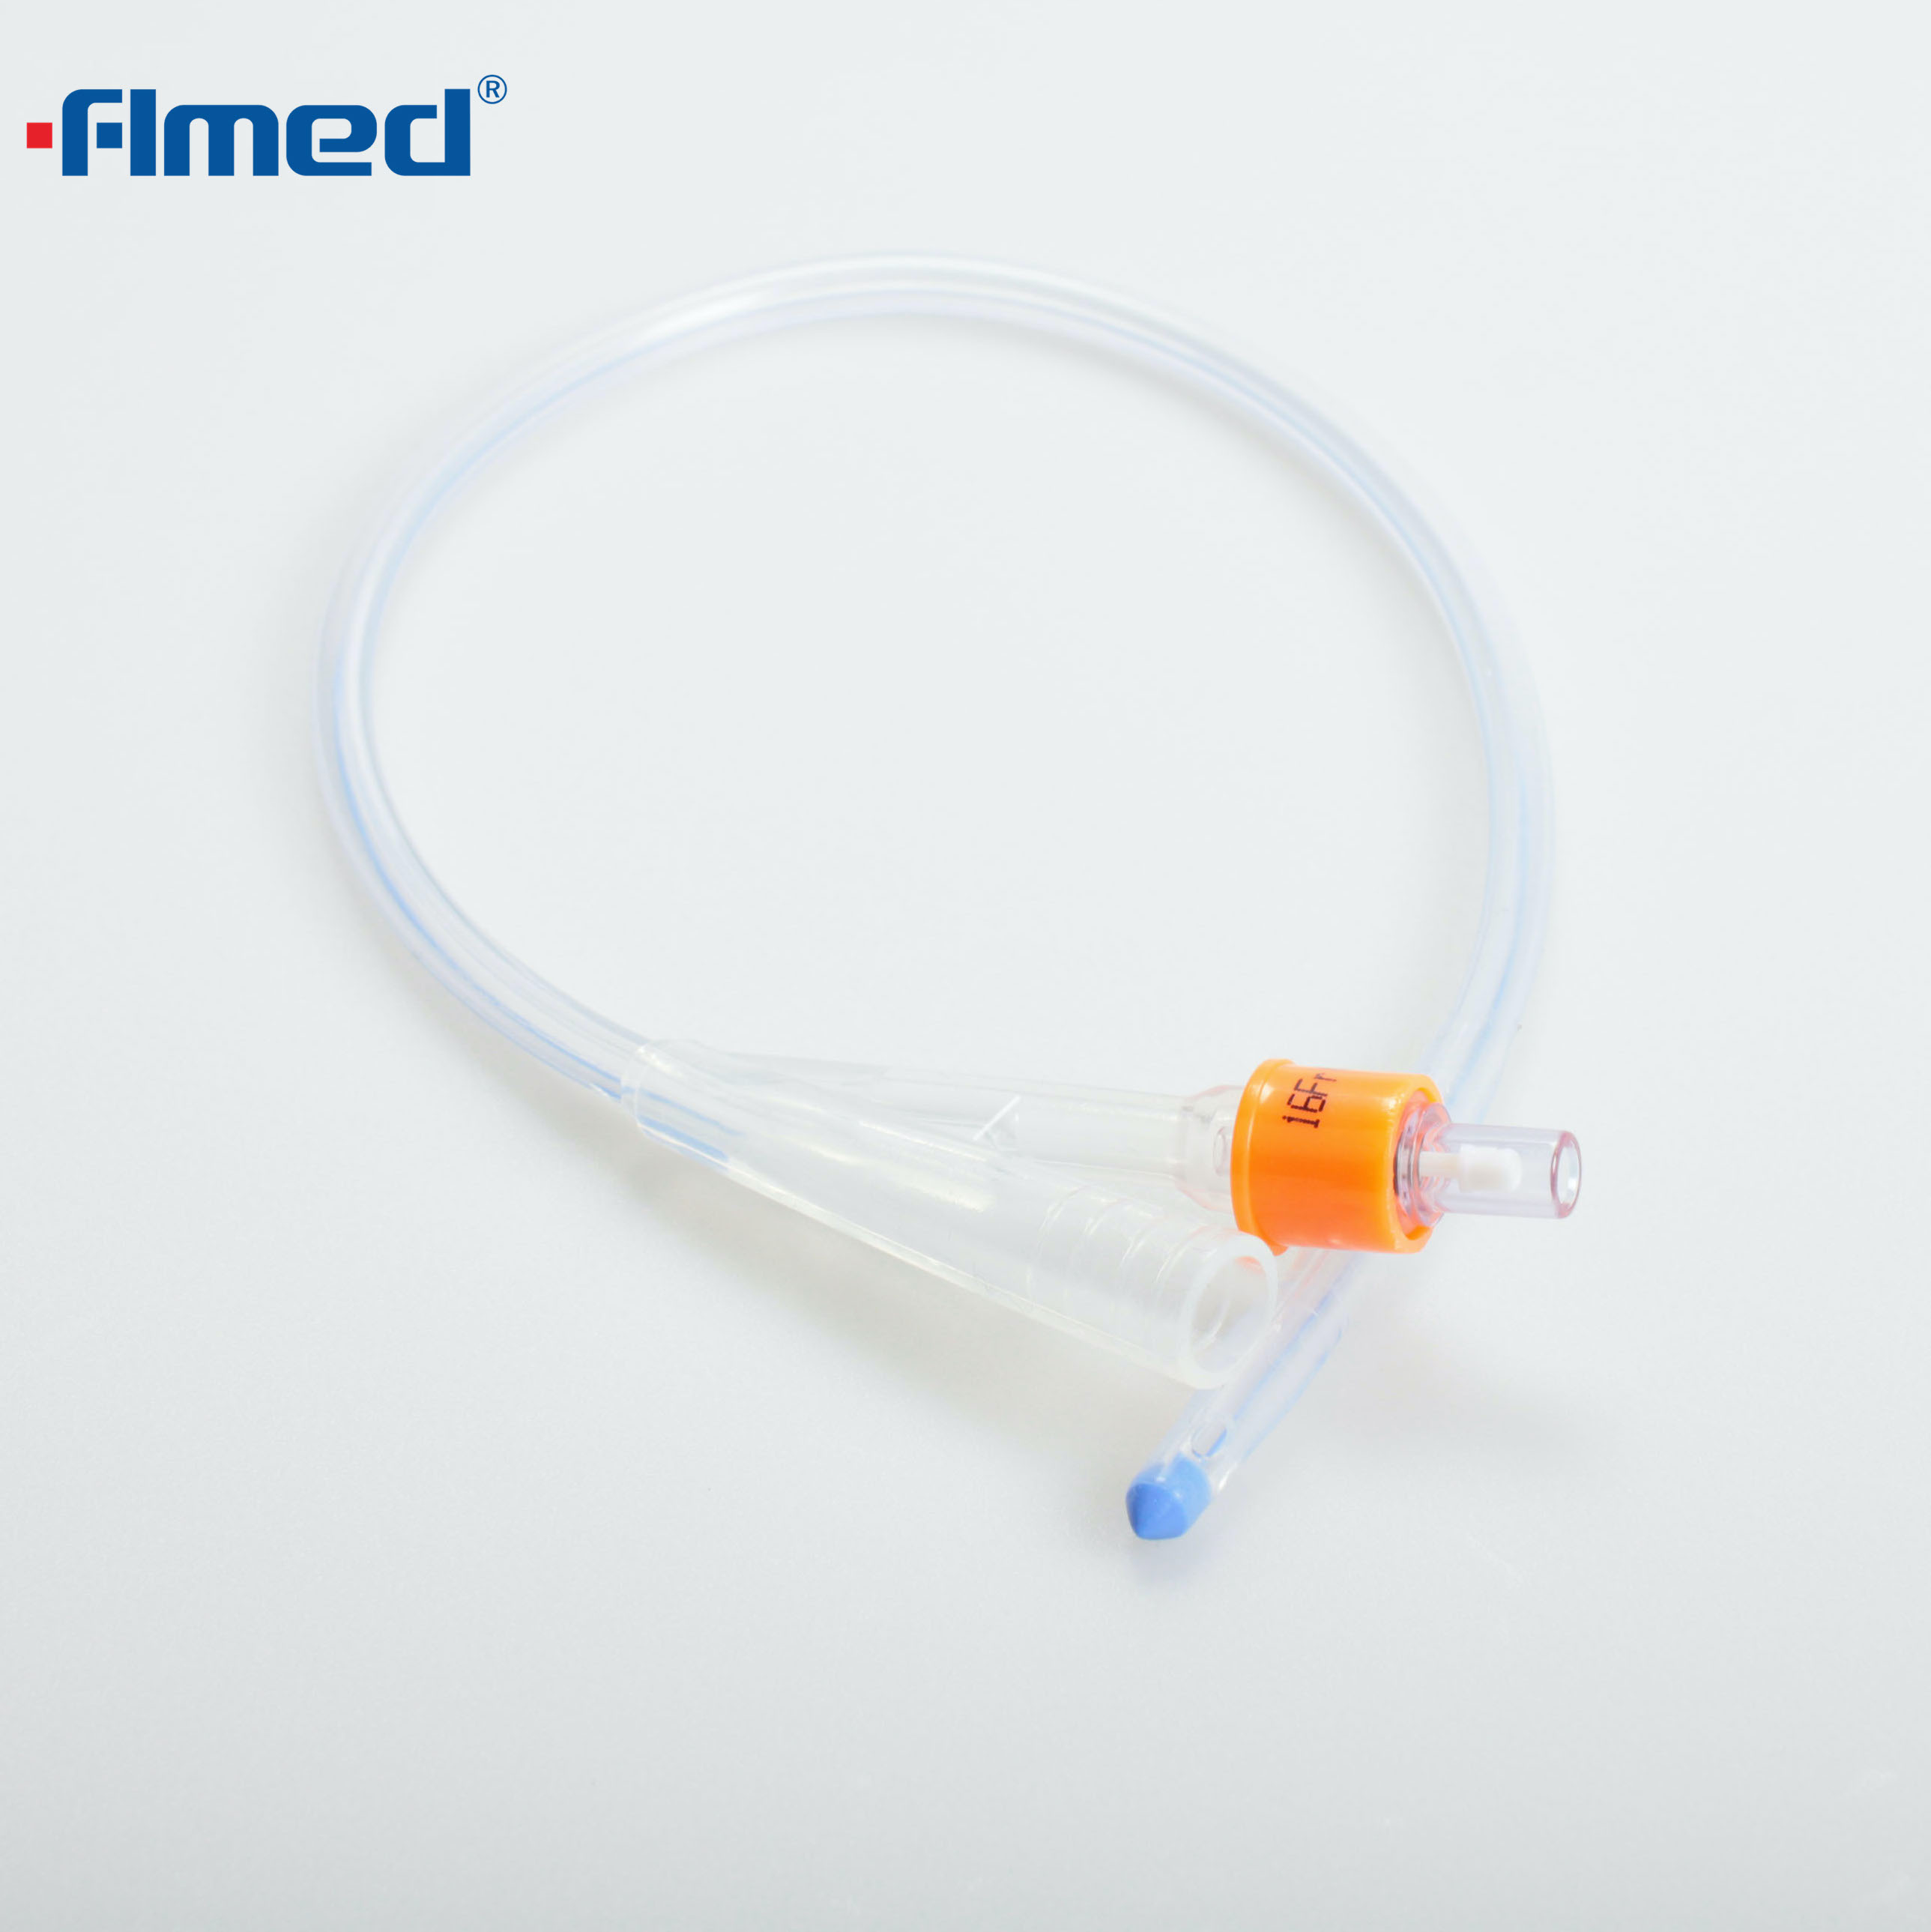 Latex Foley Catheter 2 Way Balloon Size